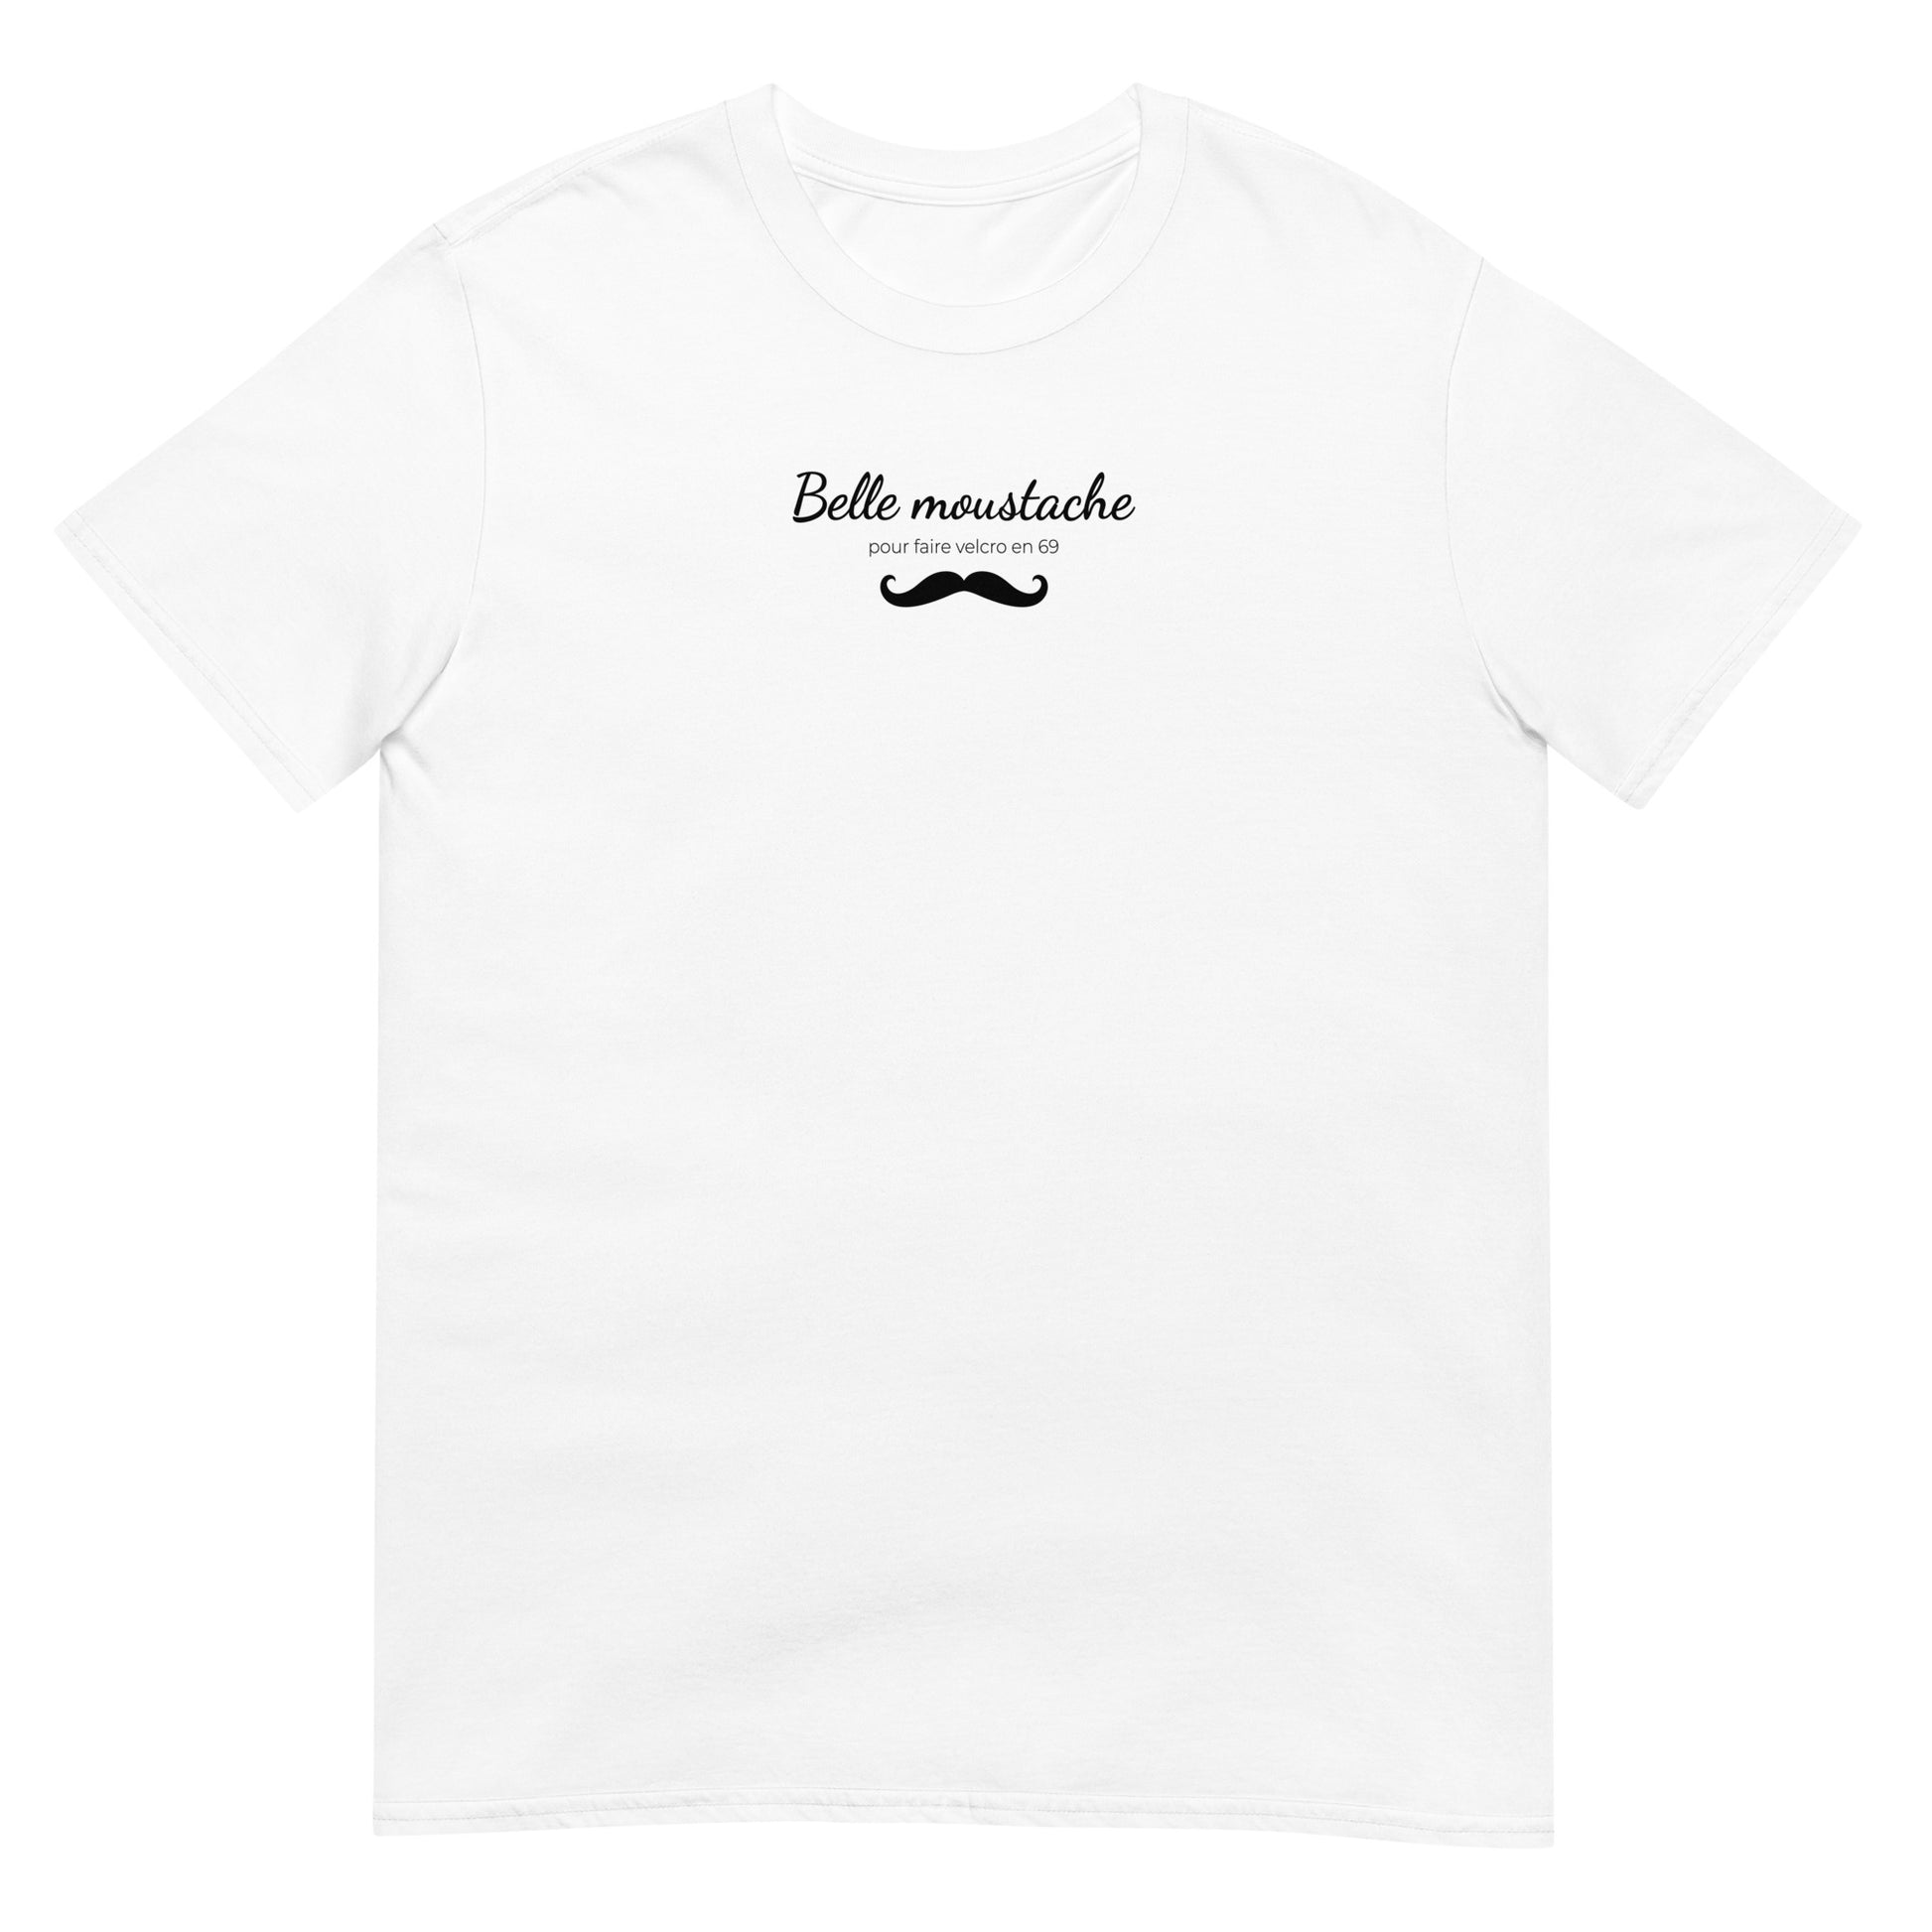 T-shirt unisexe Belle moustache pour faire velcro en 69 Sedurro